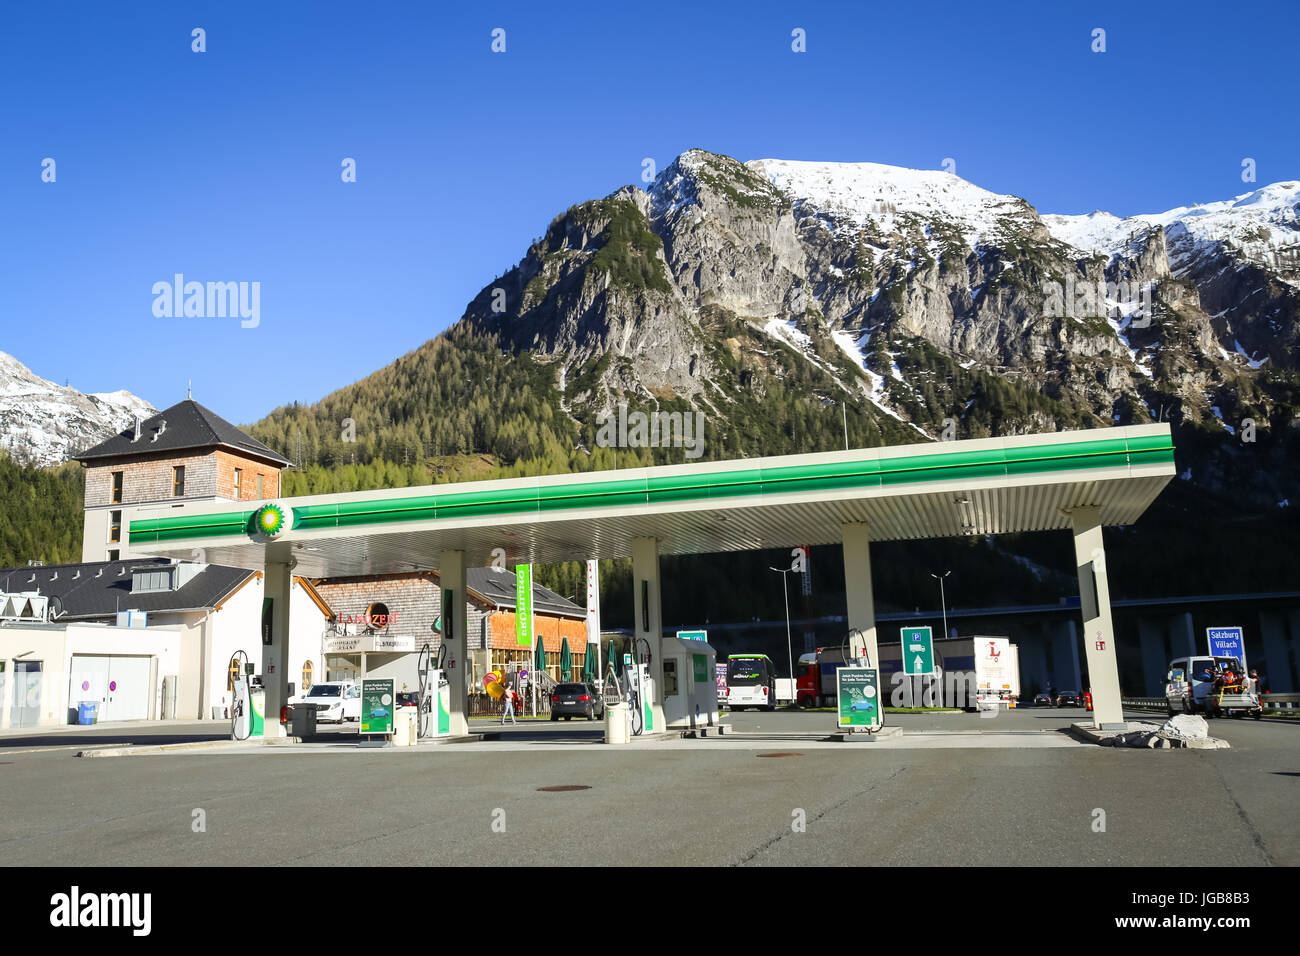 FLACHAU, Autriche - 10 MAI 2017 : l'autoroute arrêt de repos avec une station essence BP et l'Landzeit Tauernalm Hôtel et restaurant à Alpes environnement en F Banque D'Images